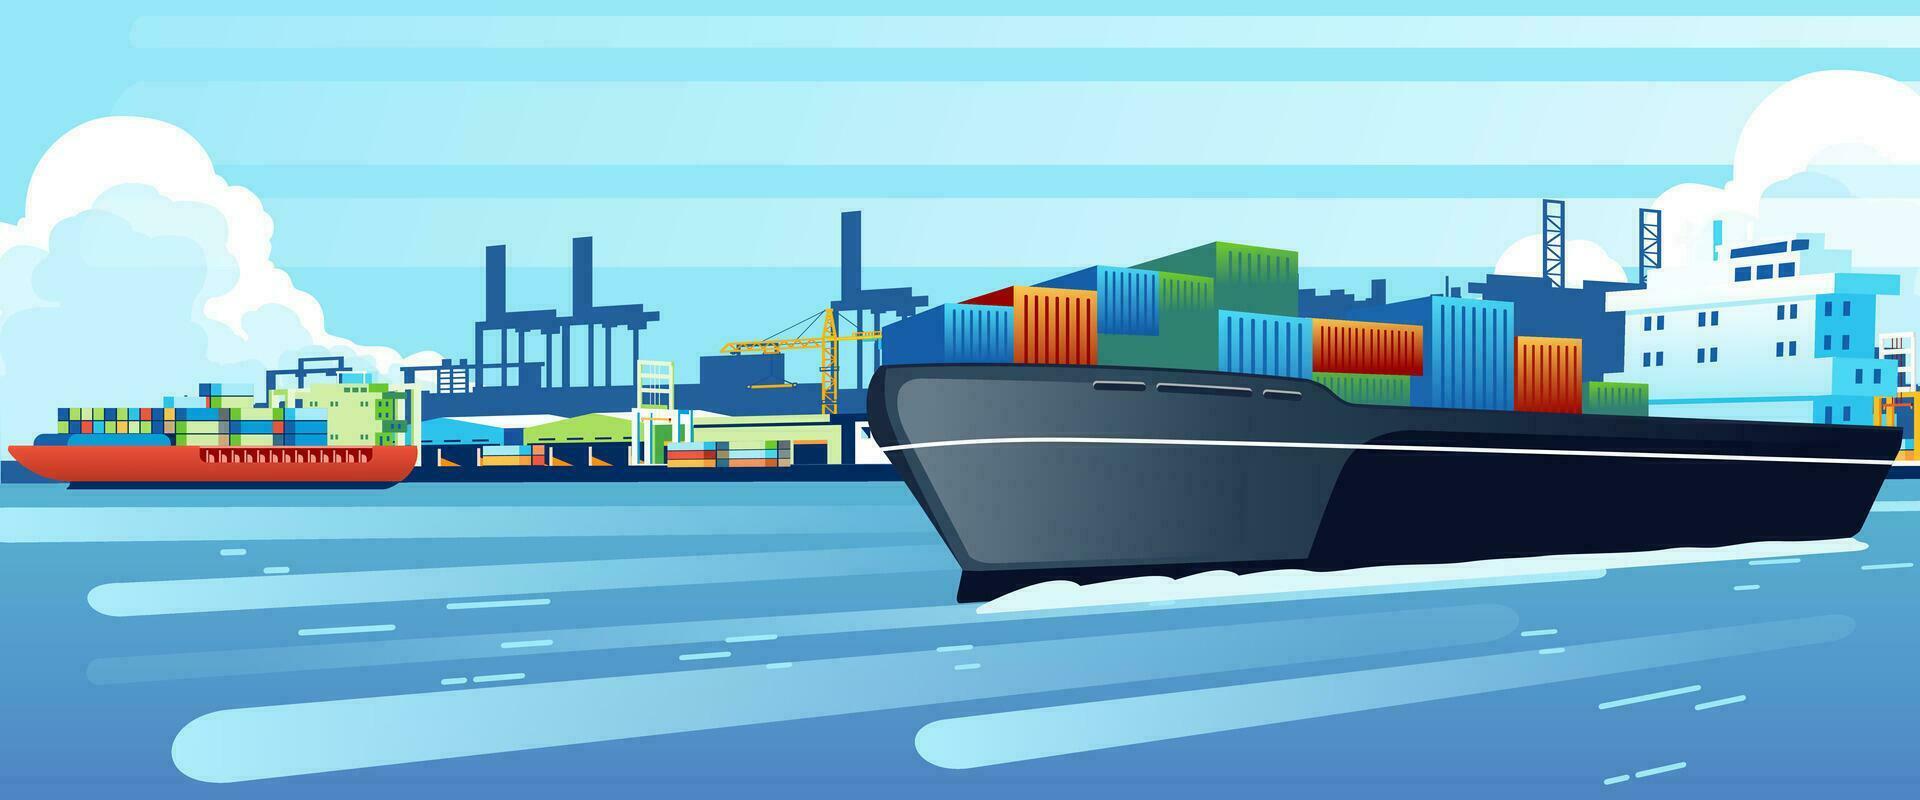 frakt fartyg på hav hamn docka, fartyg med behållare av varor i varv hamn, importera och exportera logistik tjänster transport vektor